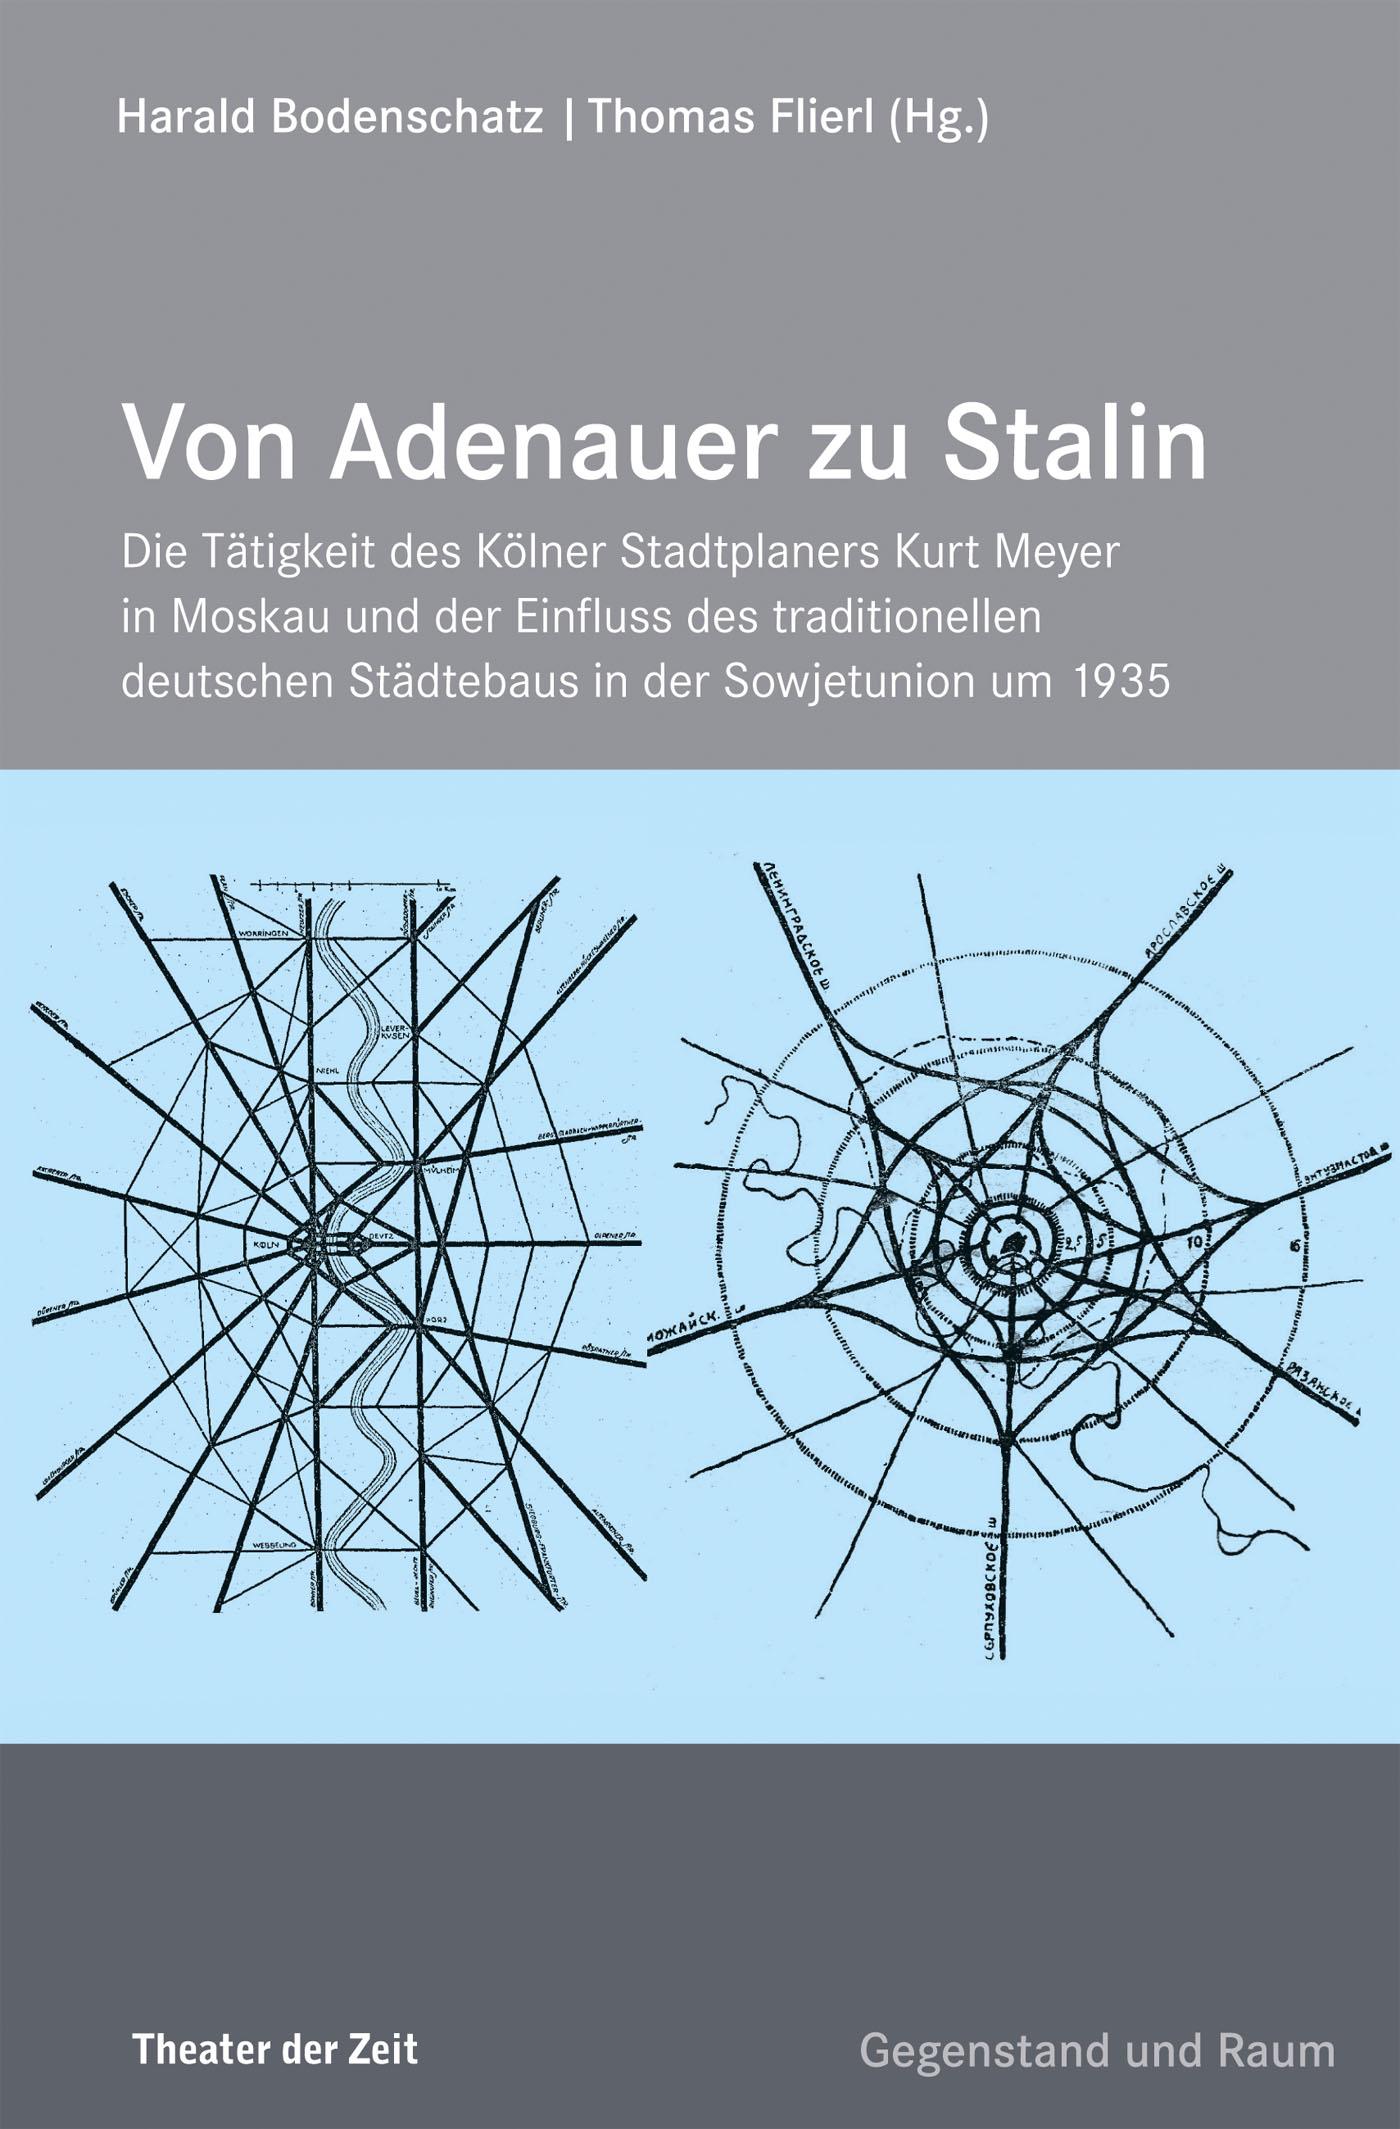 Edition Gegenstand und Raum "Von Adenauer zu Stalin"